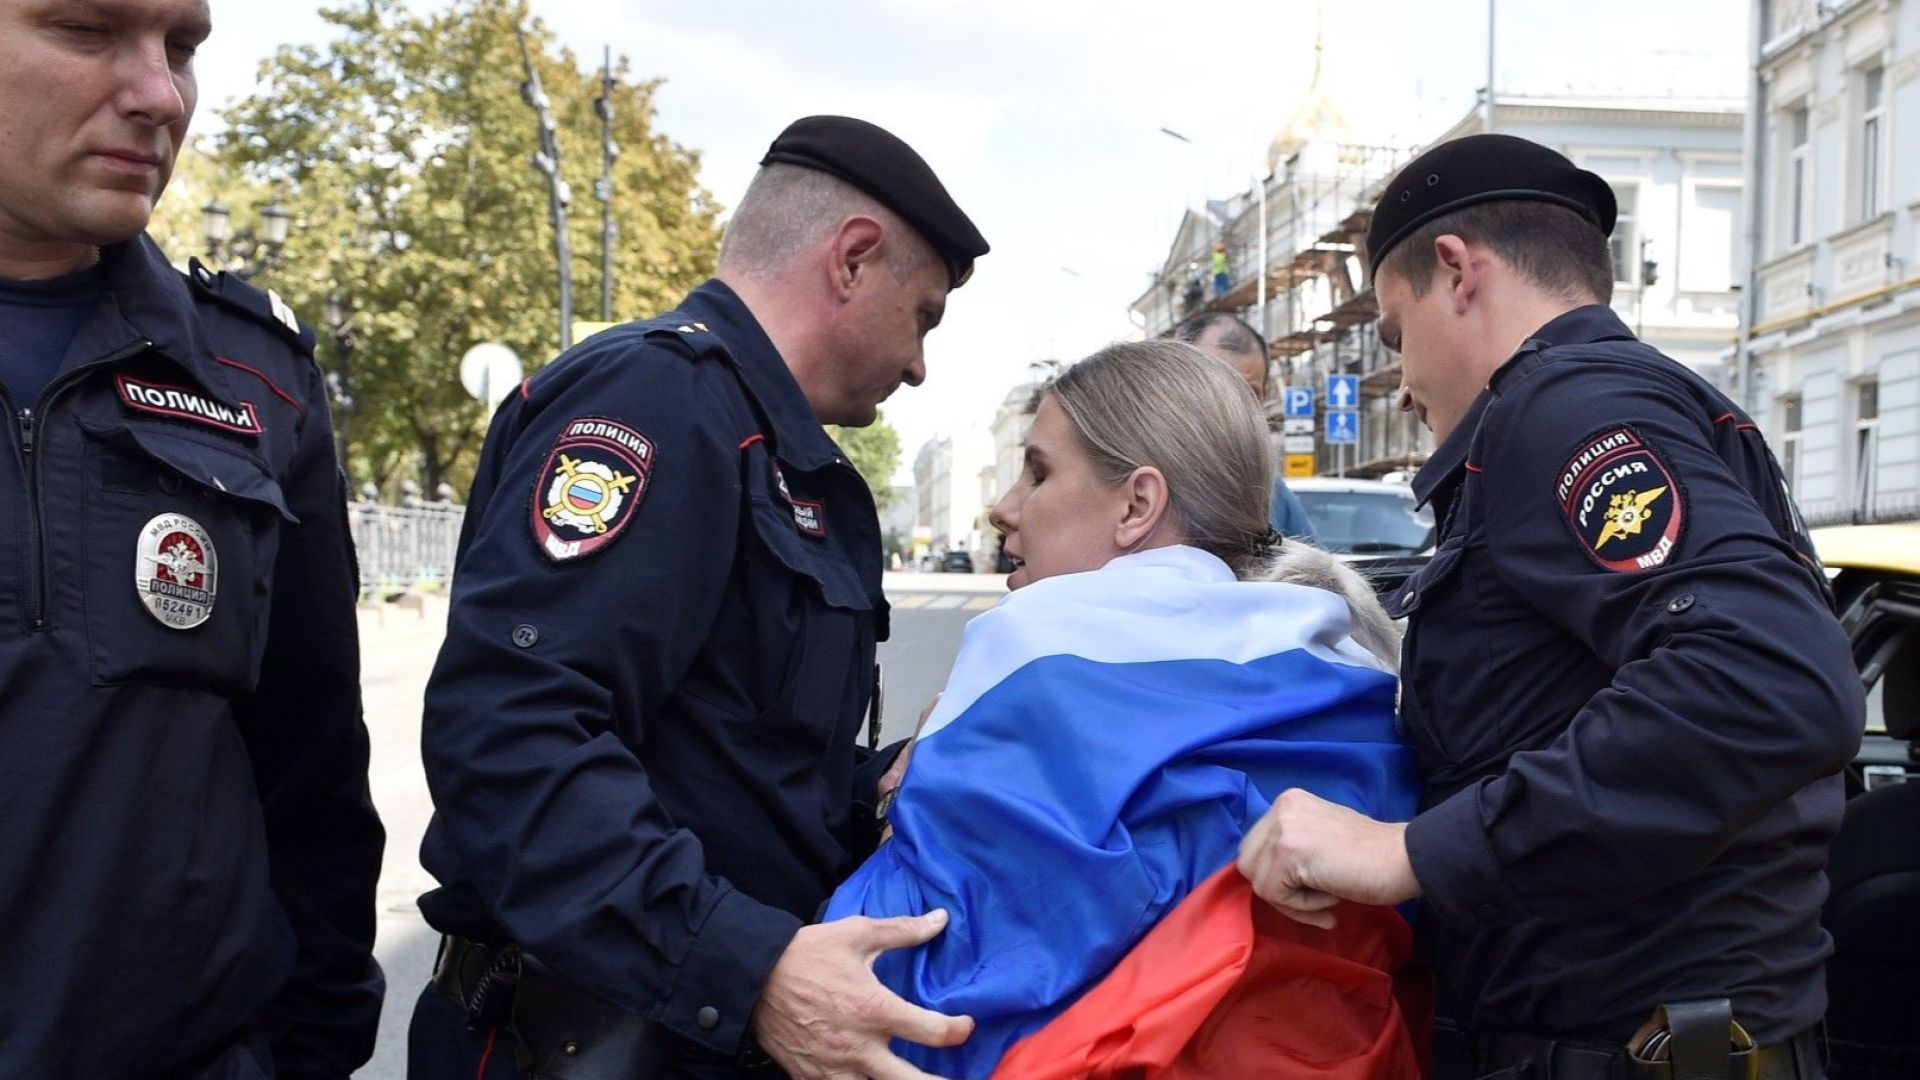 Руската полиция задържа видни членове на опозицията преди планирания протест